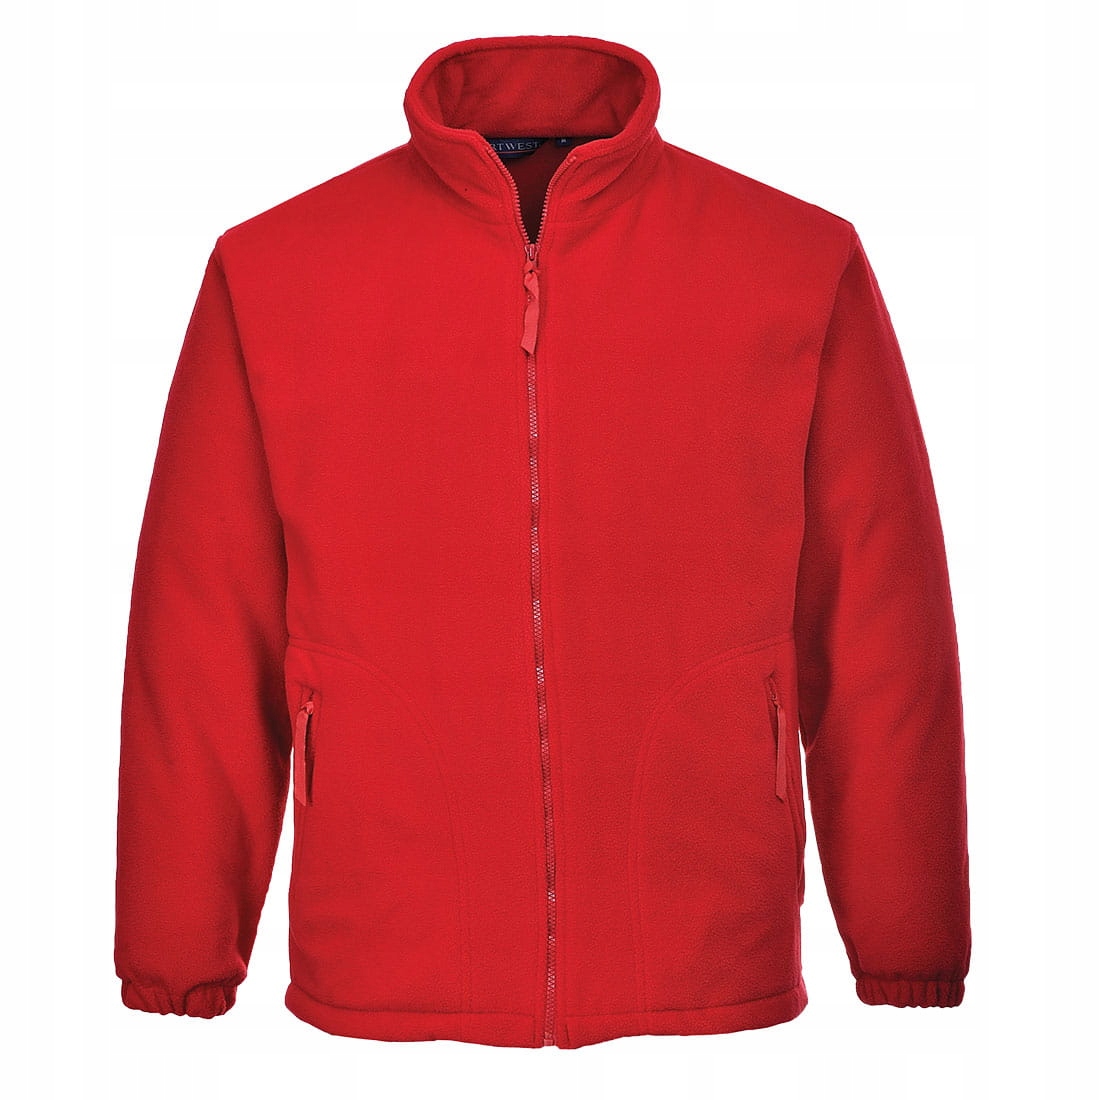 Bluza polarowa Argyll - Red, S POLAR CZERWONY